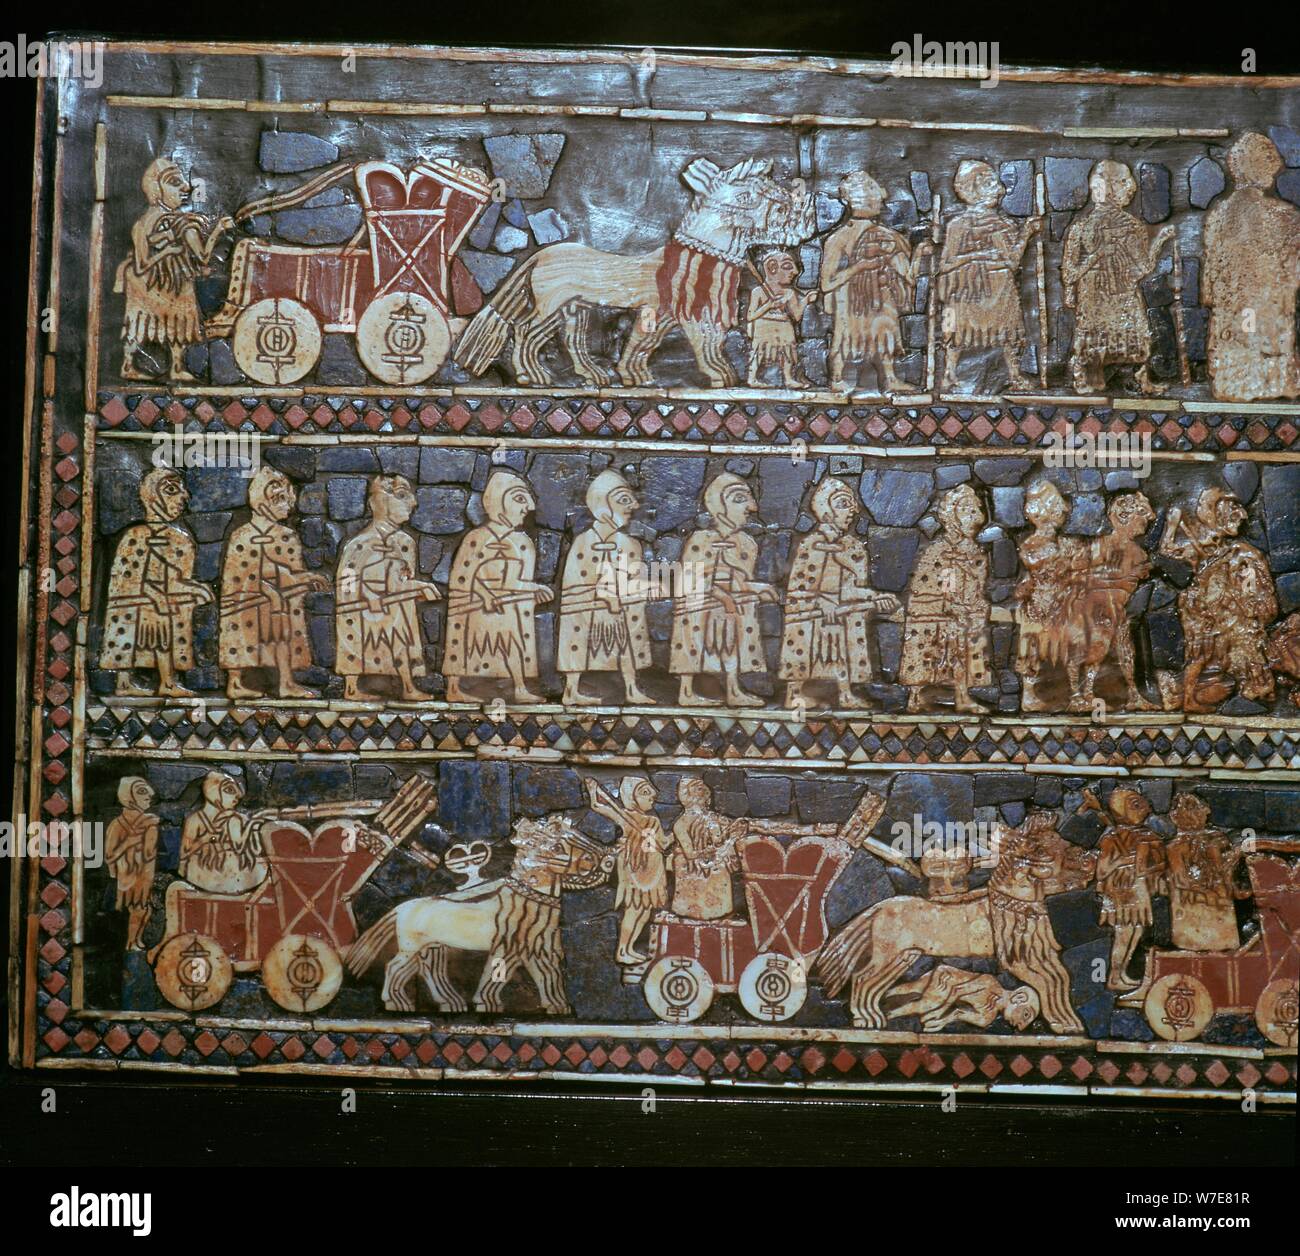 Dettaglio di standard di Ur, mostrando i carri e soldati, Iraq meridionale, circa 2600-2400 A.C. Artista: sconosciuto Foto Stock